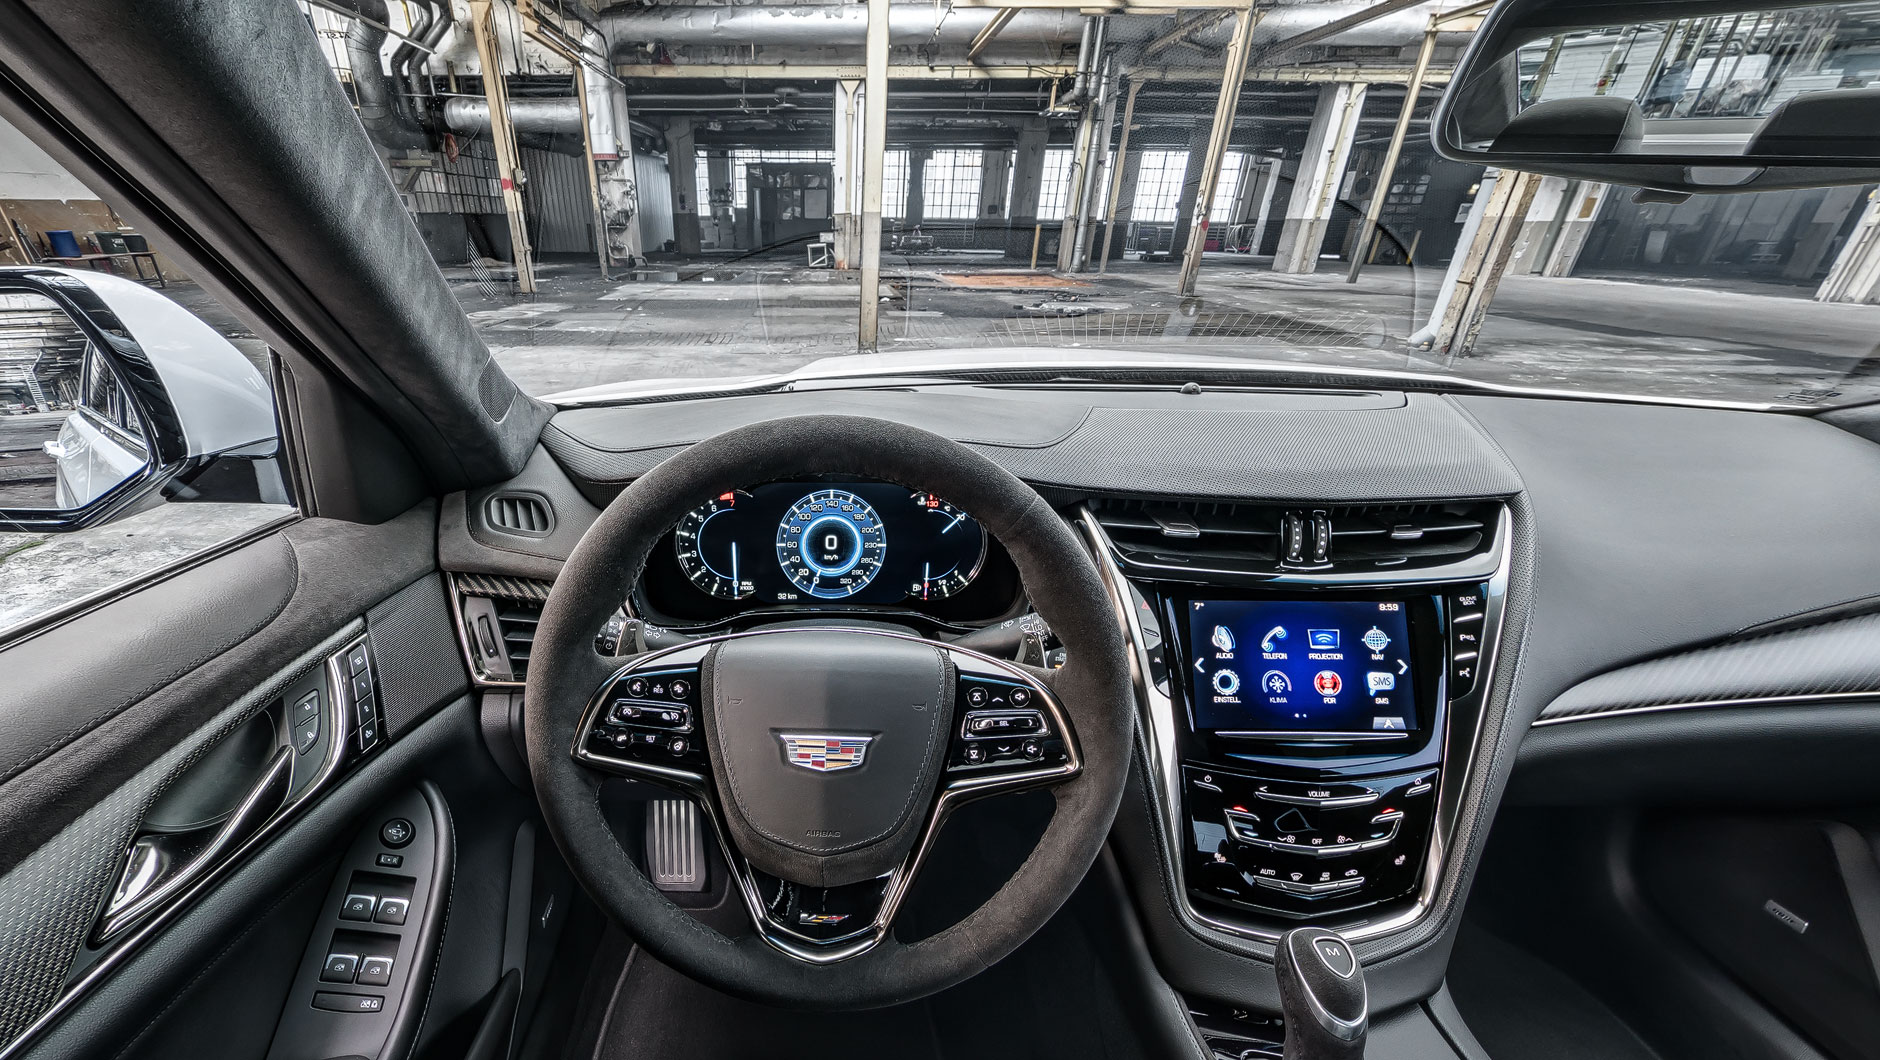 Autoinnenraum / Interior eines Cadillac CTS-V. Foto aufgenommen aus der Perspektive des Fahrers. Das Auto steht in einer alten, stillgelegten Fabrikhalle.